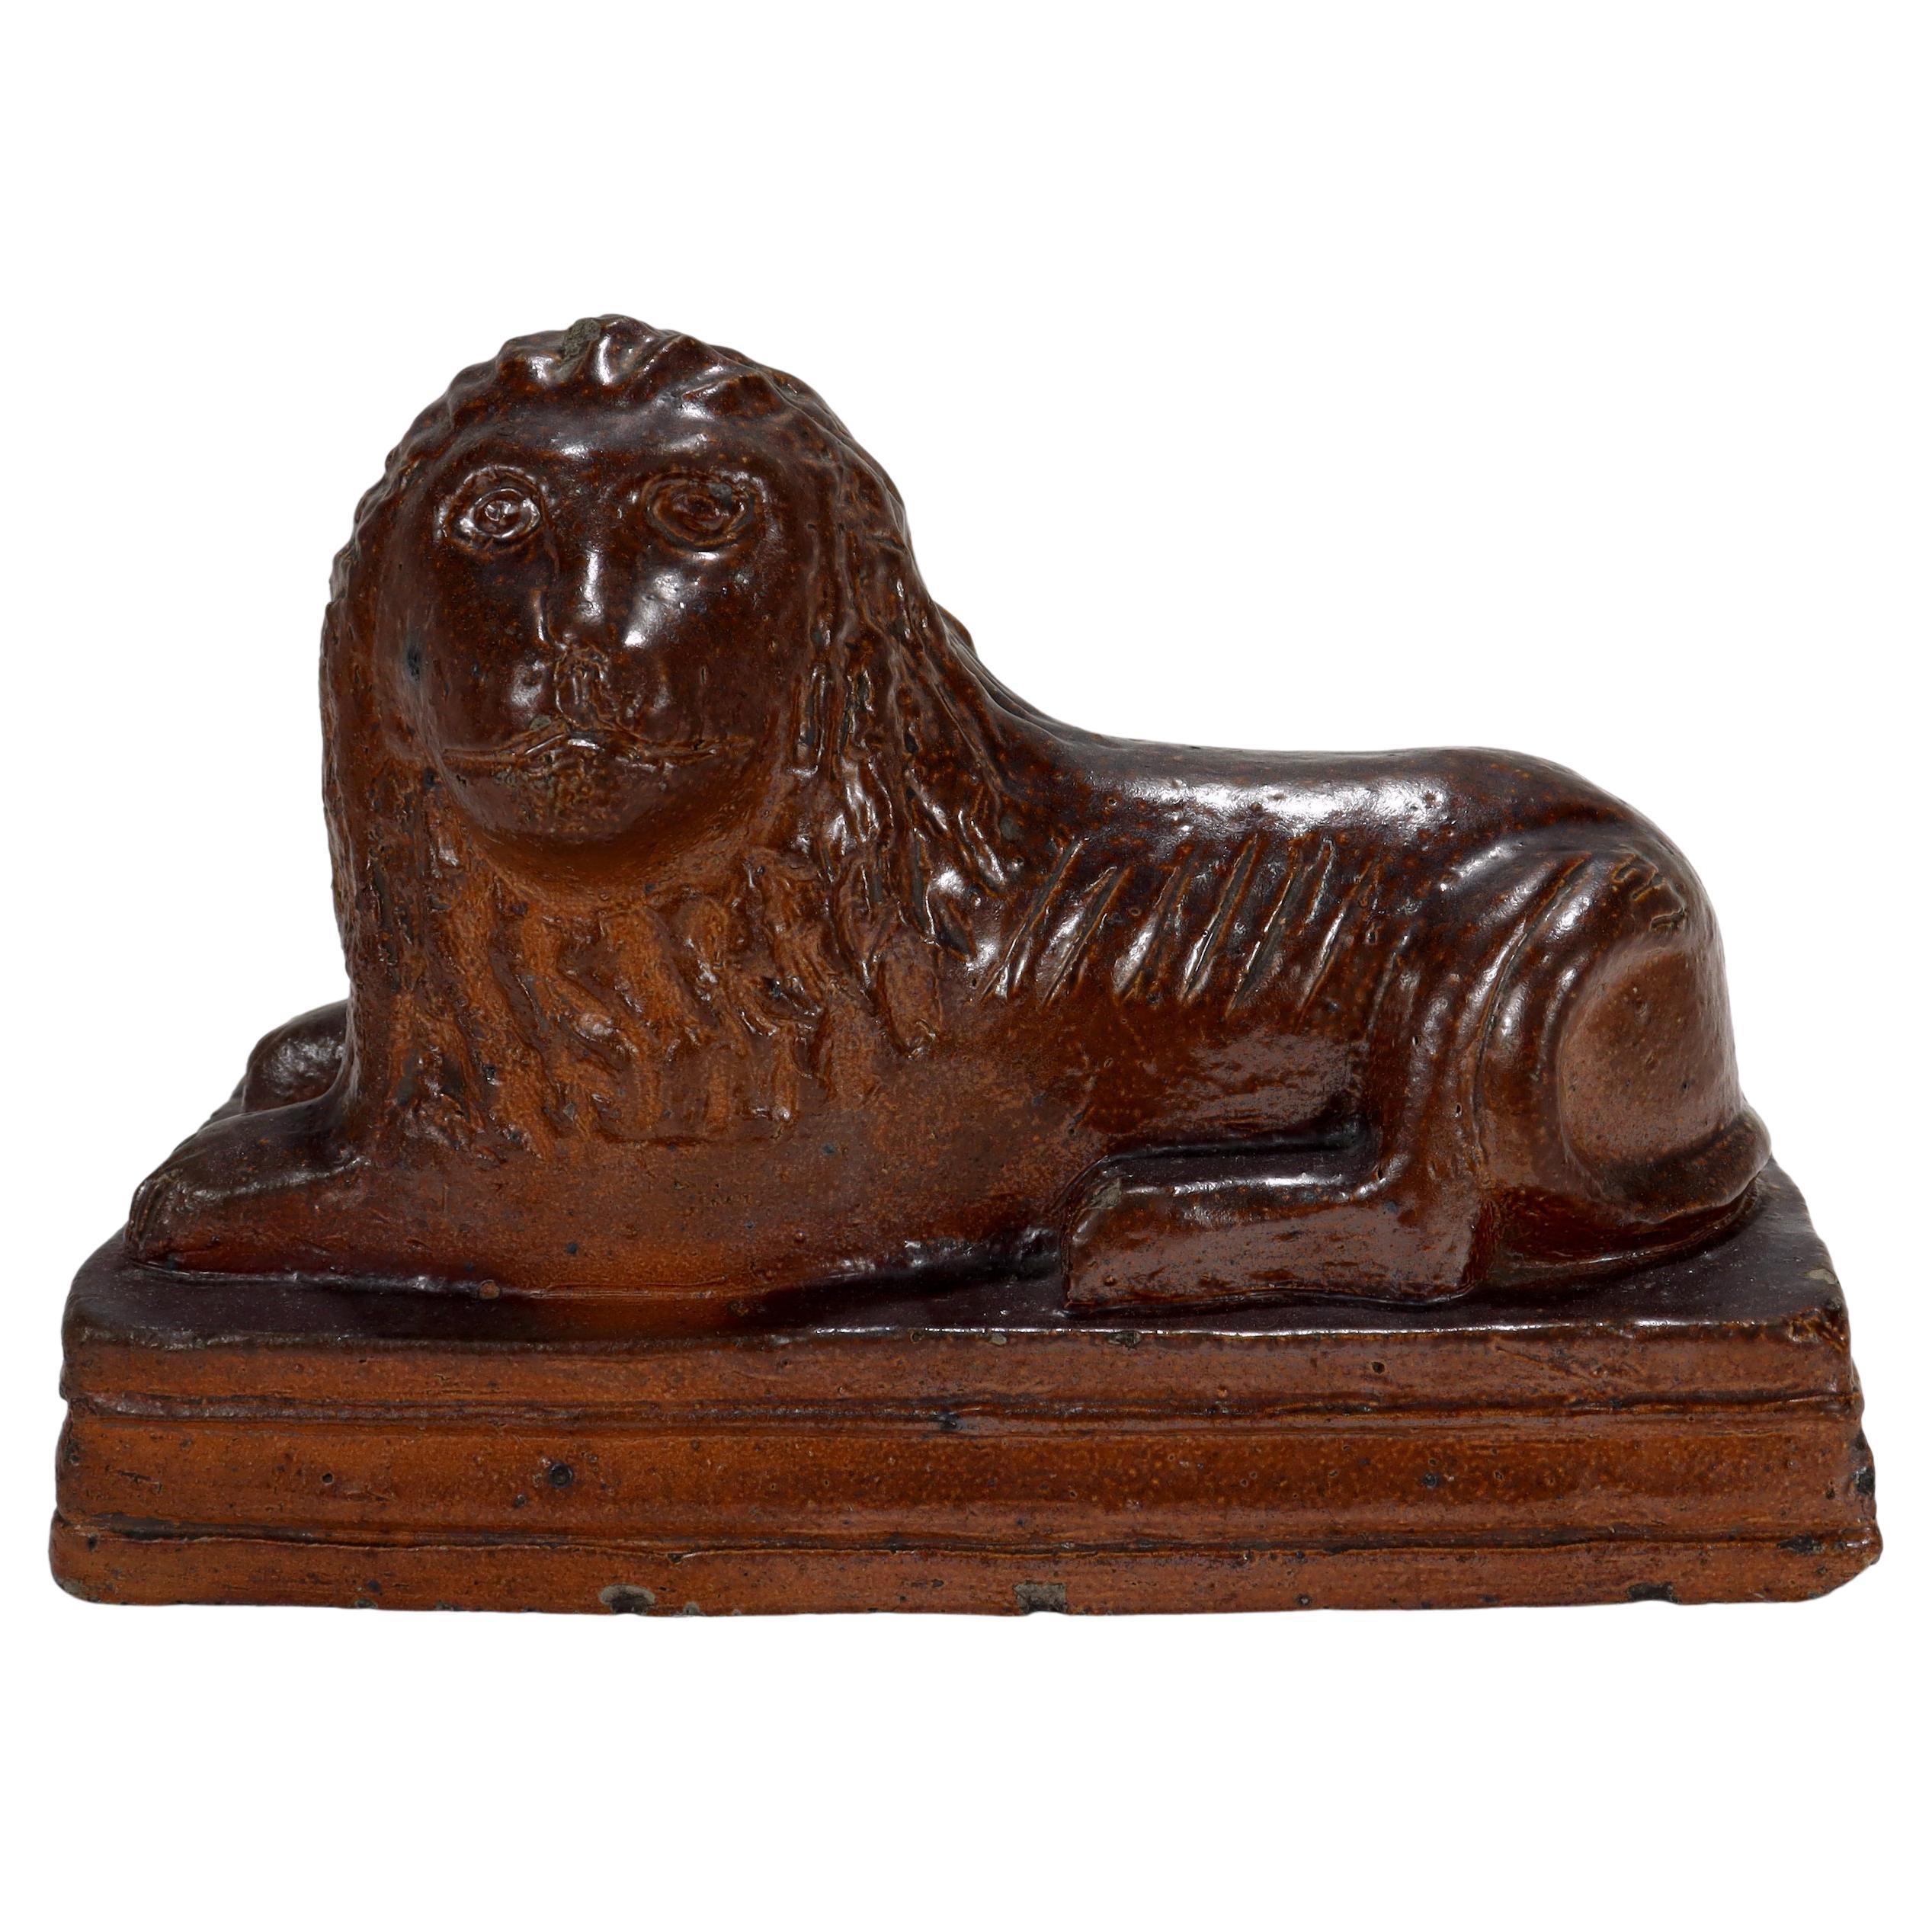 Antike signierte amerikanische Volkskunst-Wasserfliesenfliesen- oder Rotware-Keramik-Löwenfigur, Löwenfigur